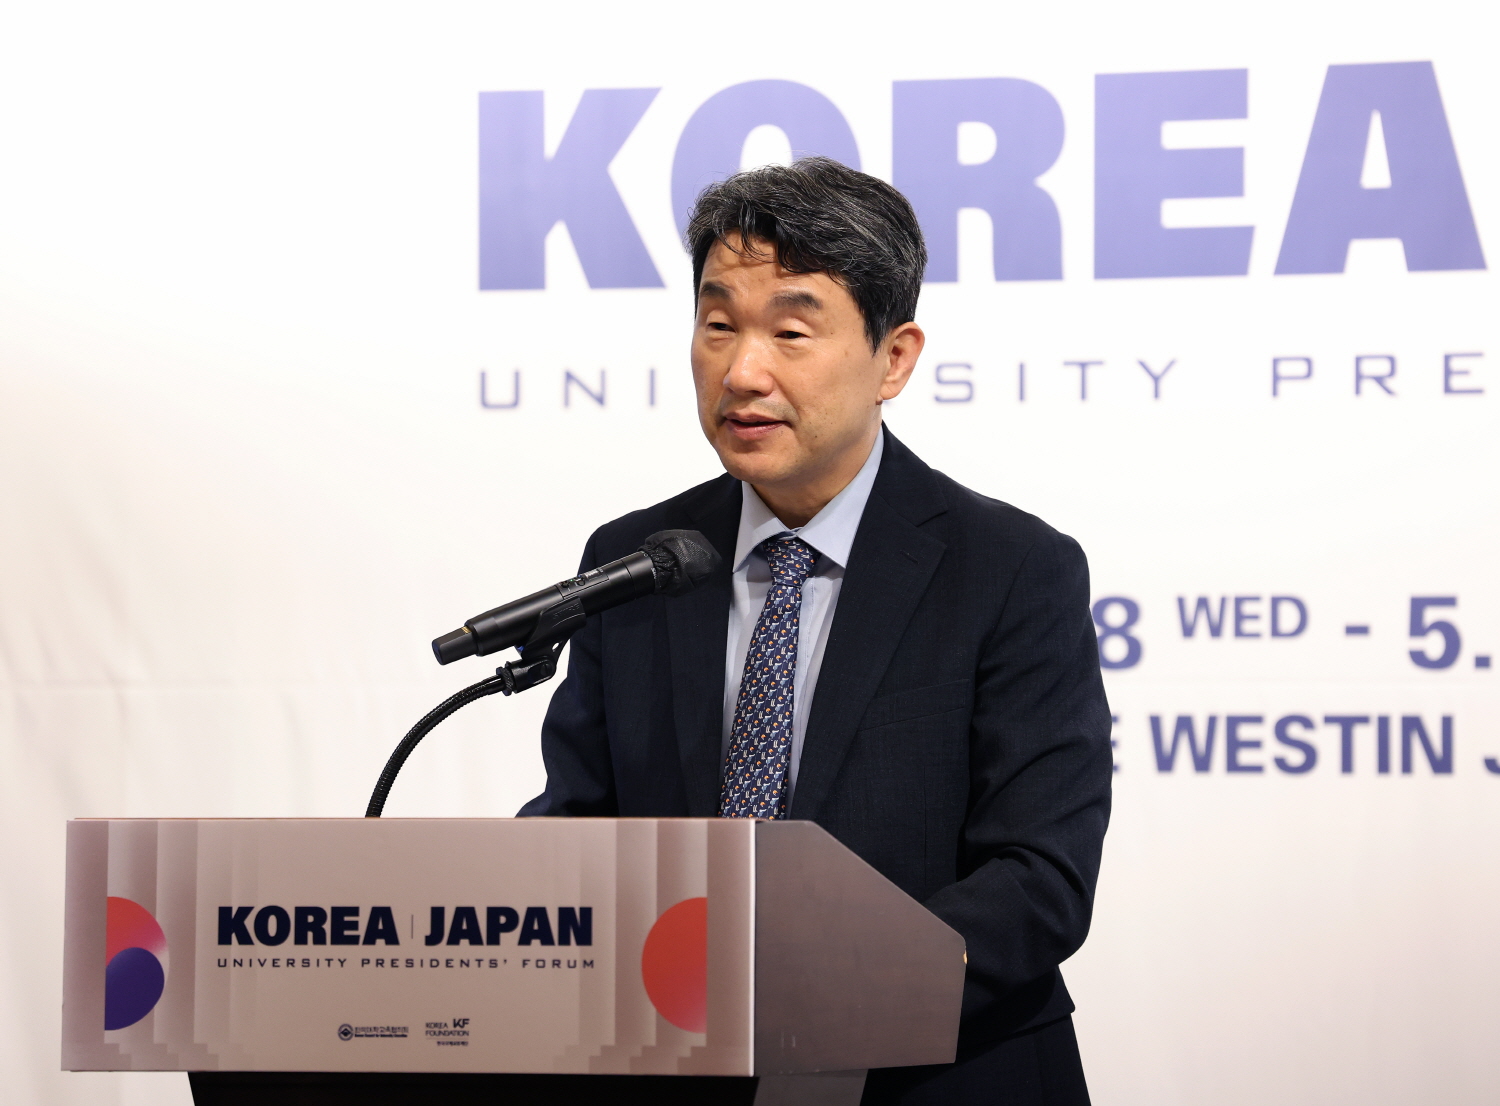 이주호 부총리 겸 교육부장관은 5월 9일(목), 웨스틴 조선 서울호텔에서 열린 「한일 대학총장 포럼」에 참석했다.